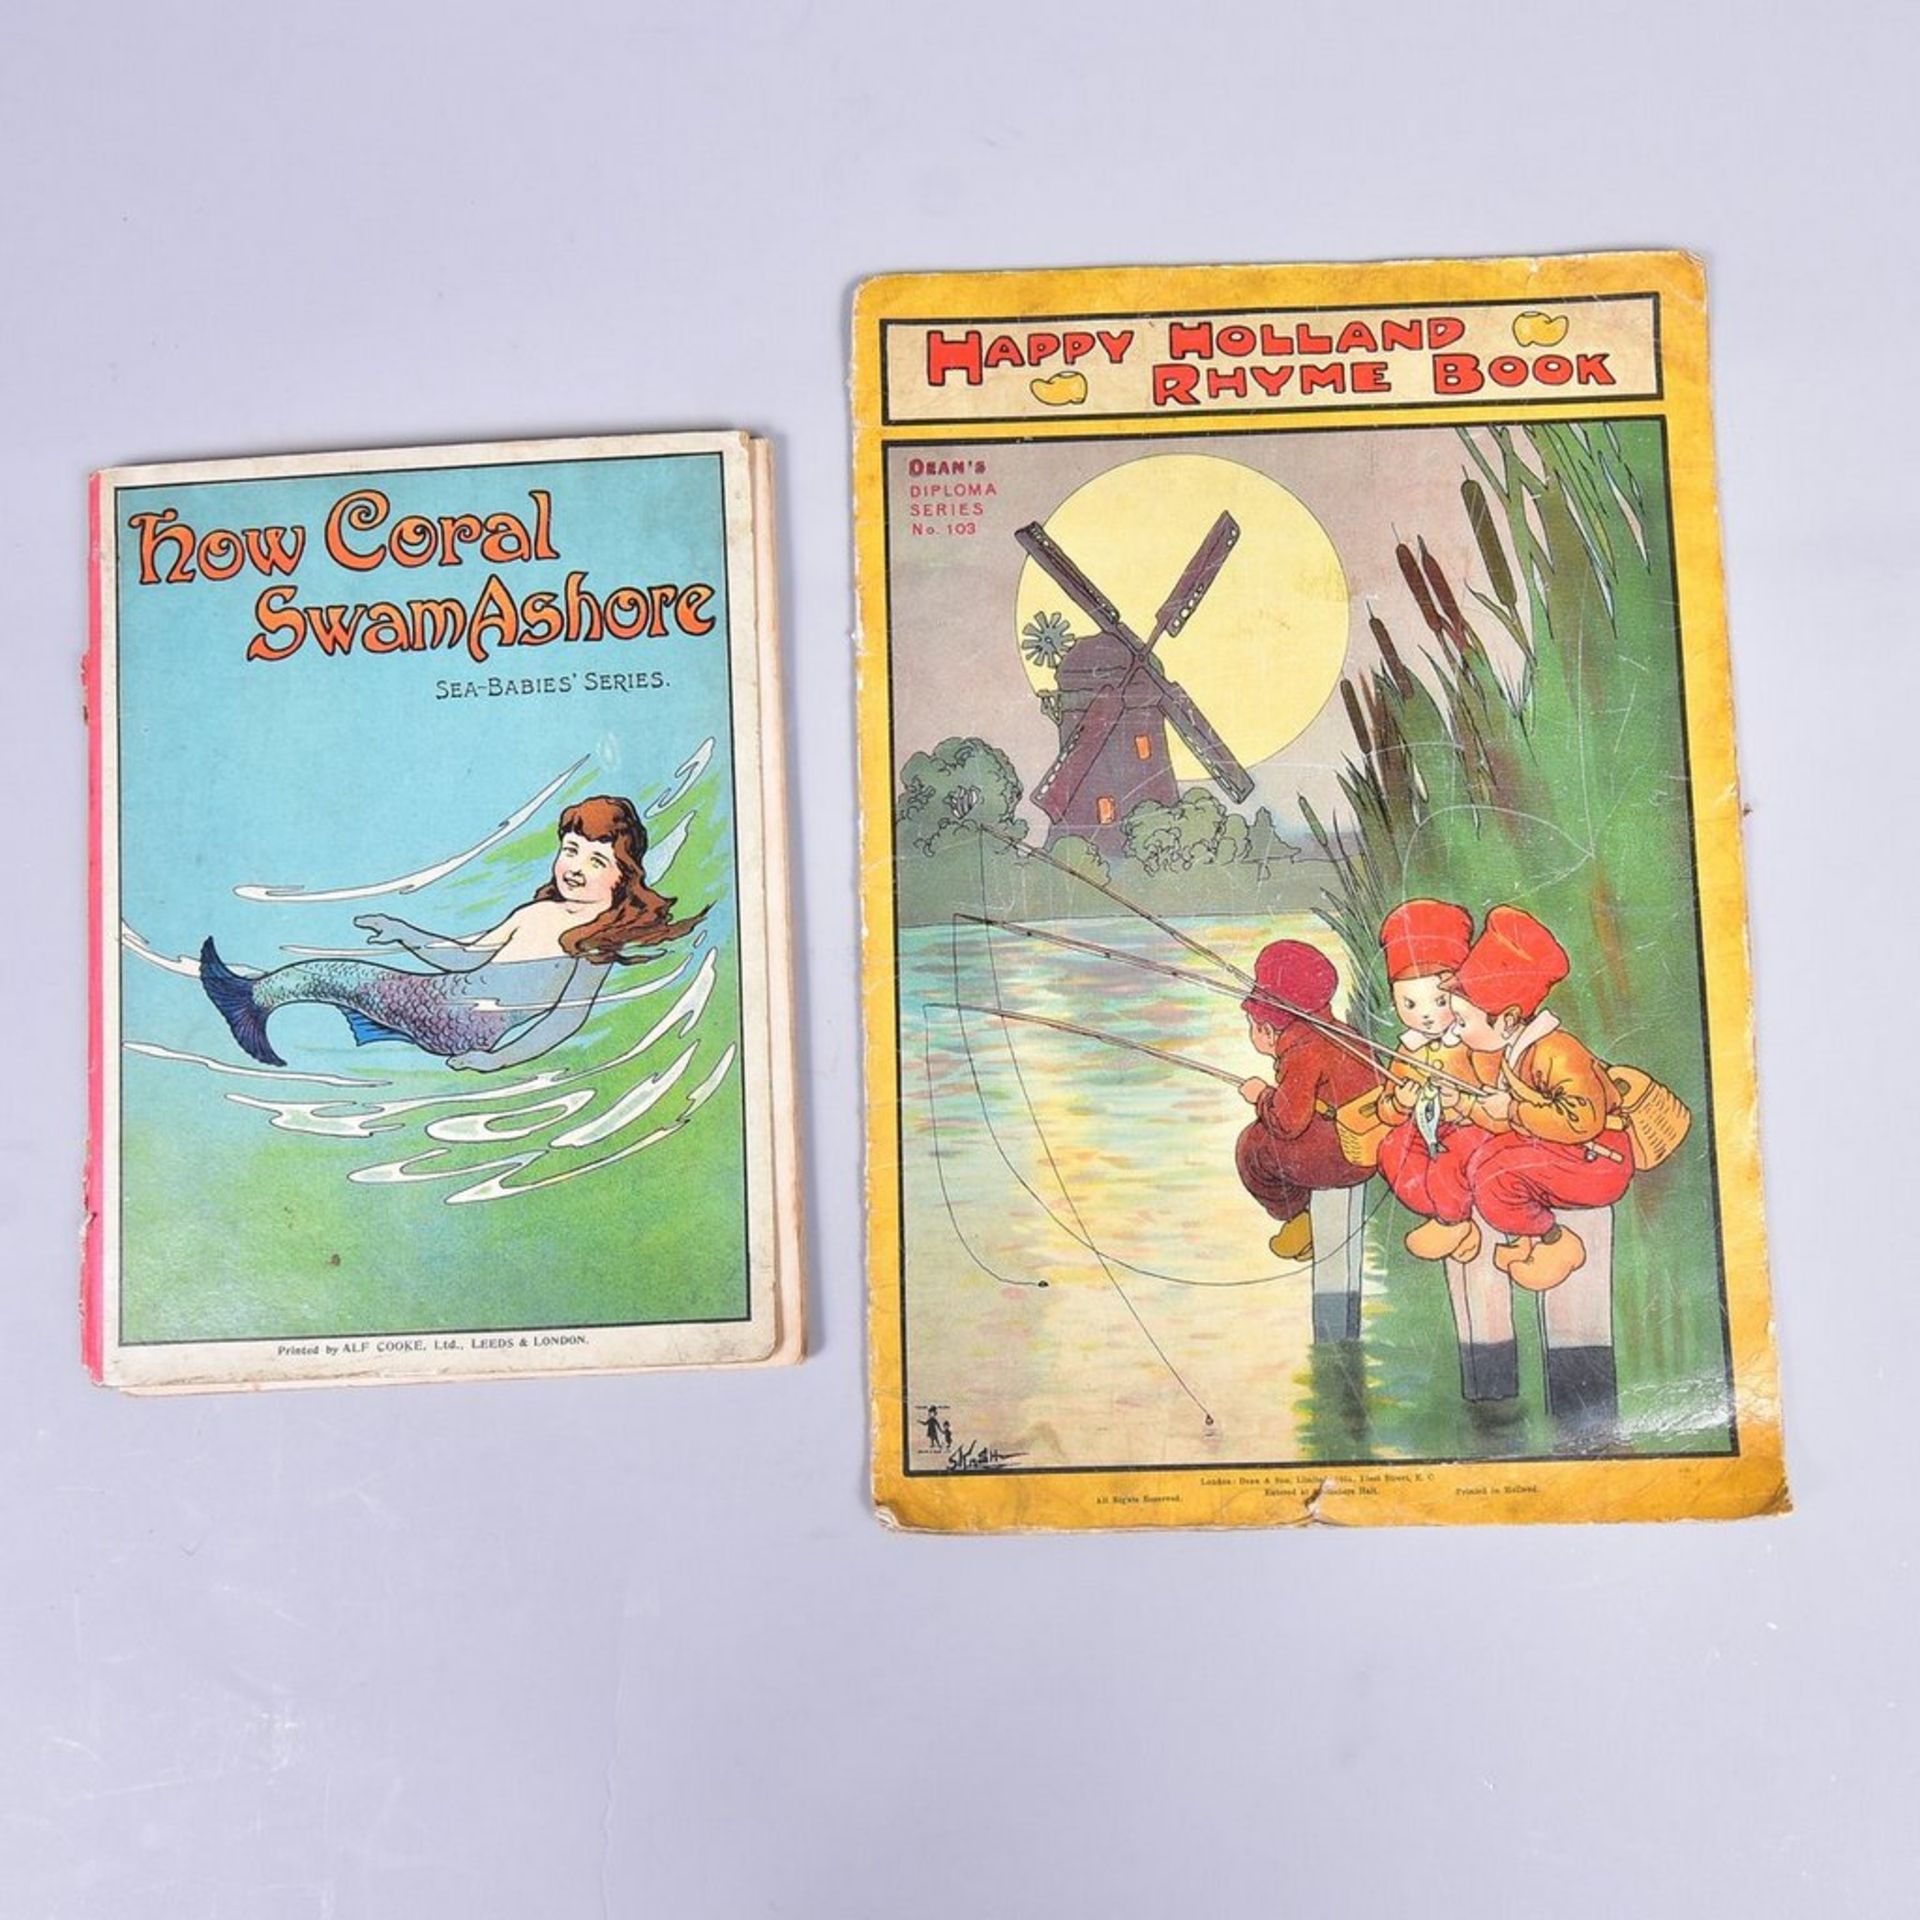 2 Stück englische Kinderbücher, " How Coral Swam Ashore" publ. von T. Fisher Unwin London und "Happy